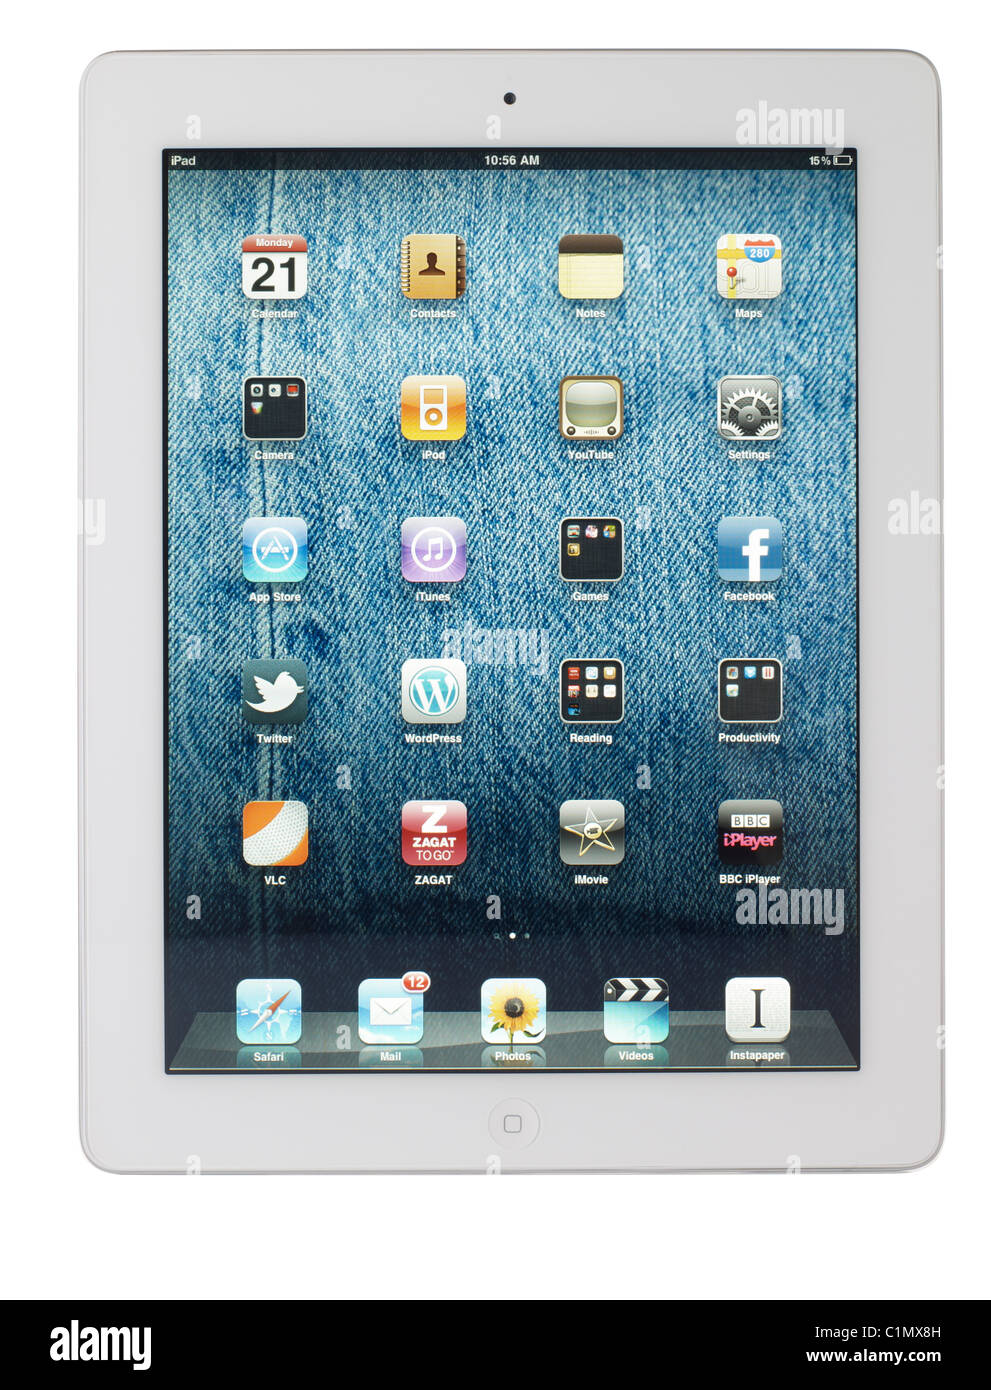 Apple iPad 2 Stock Photo